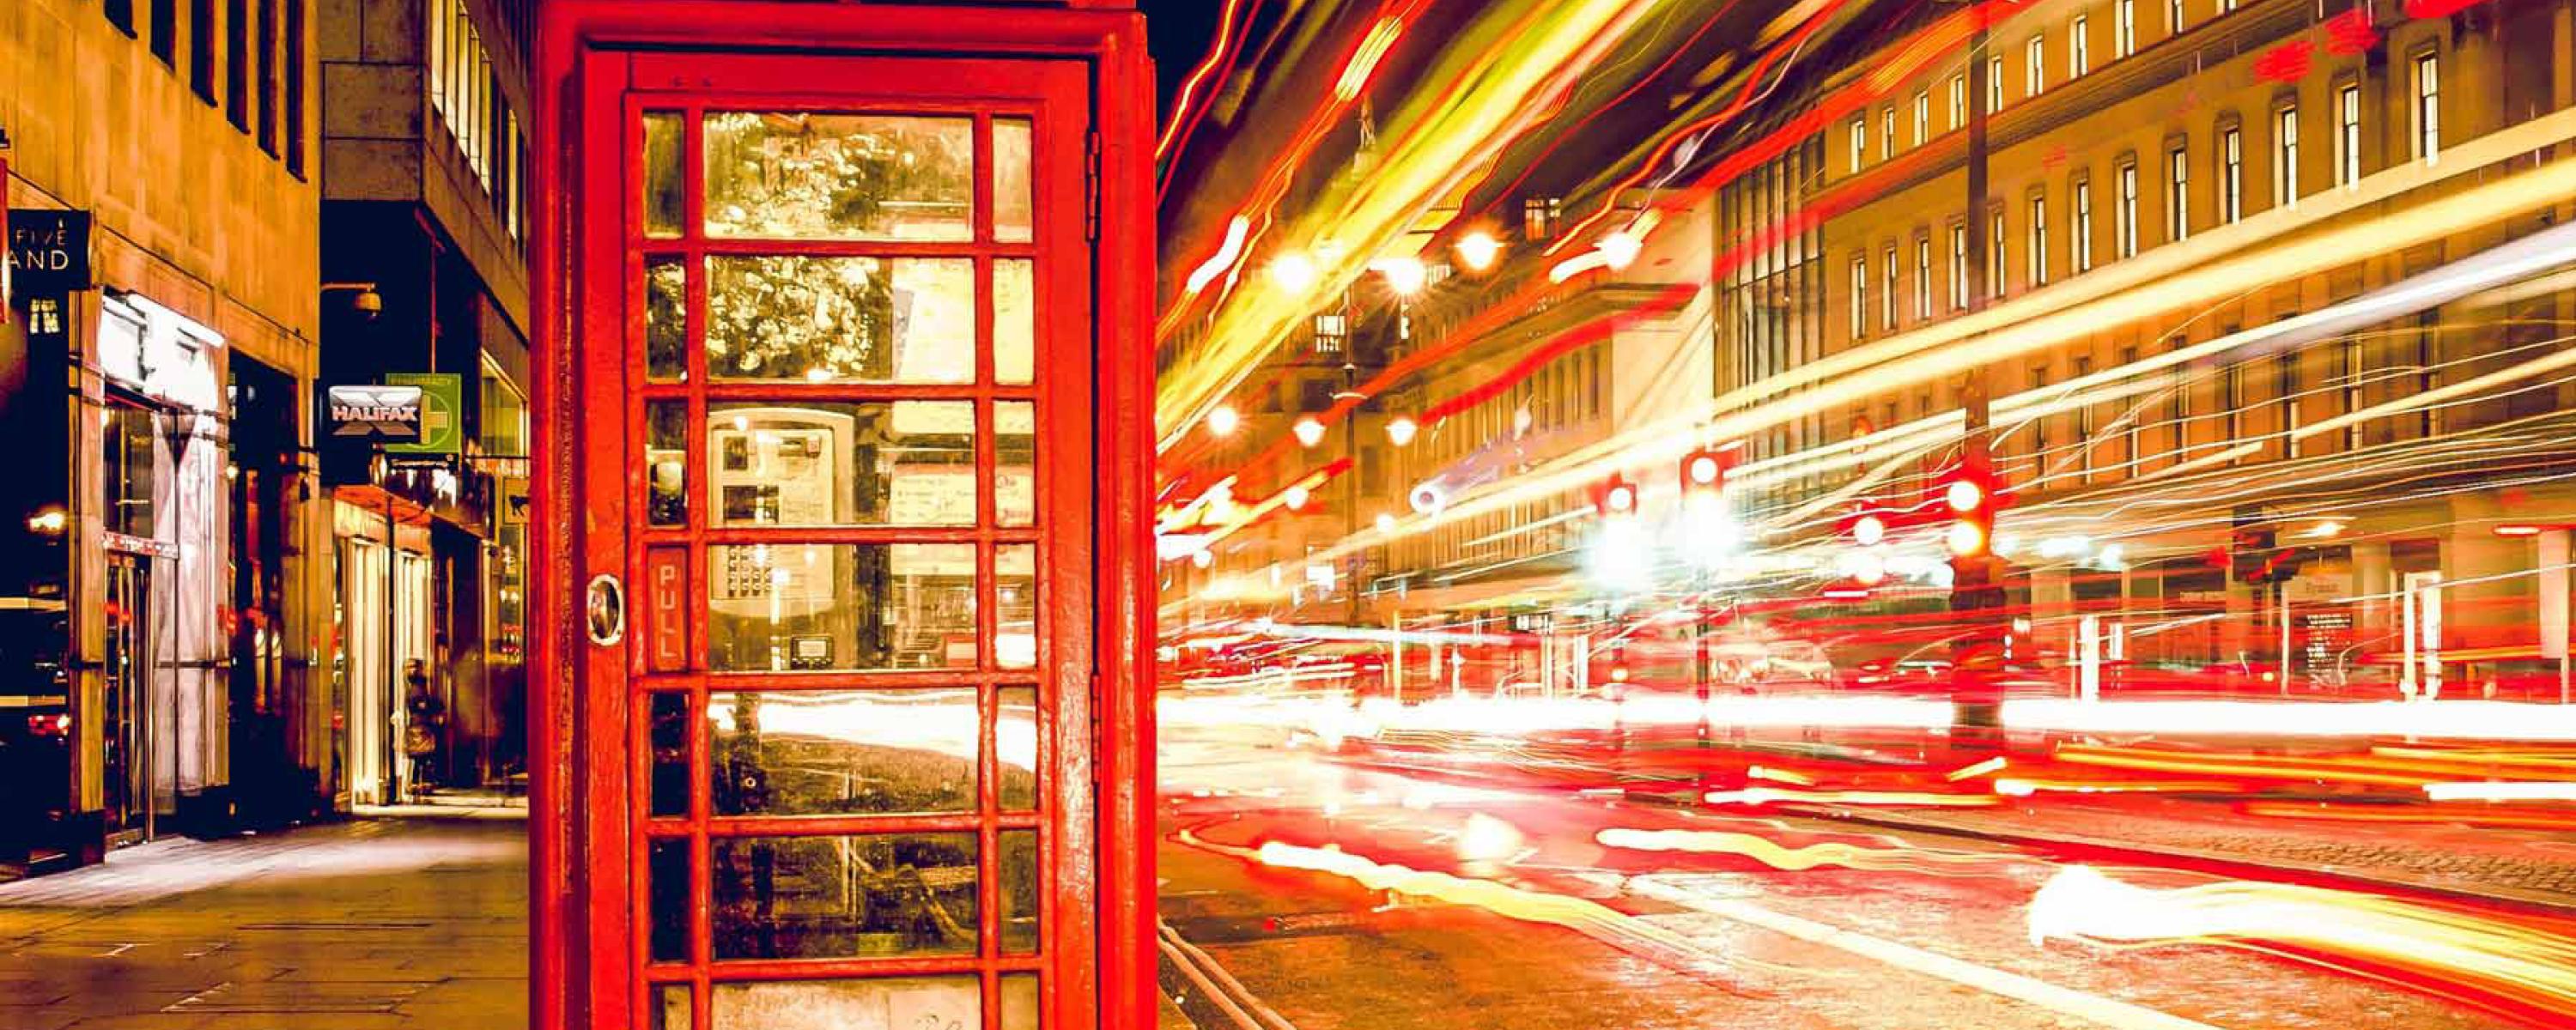 Cabina telefónica Londres